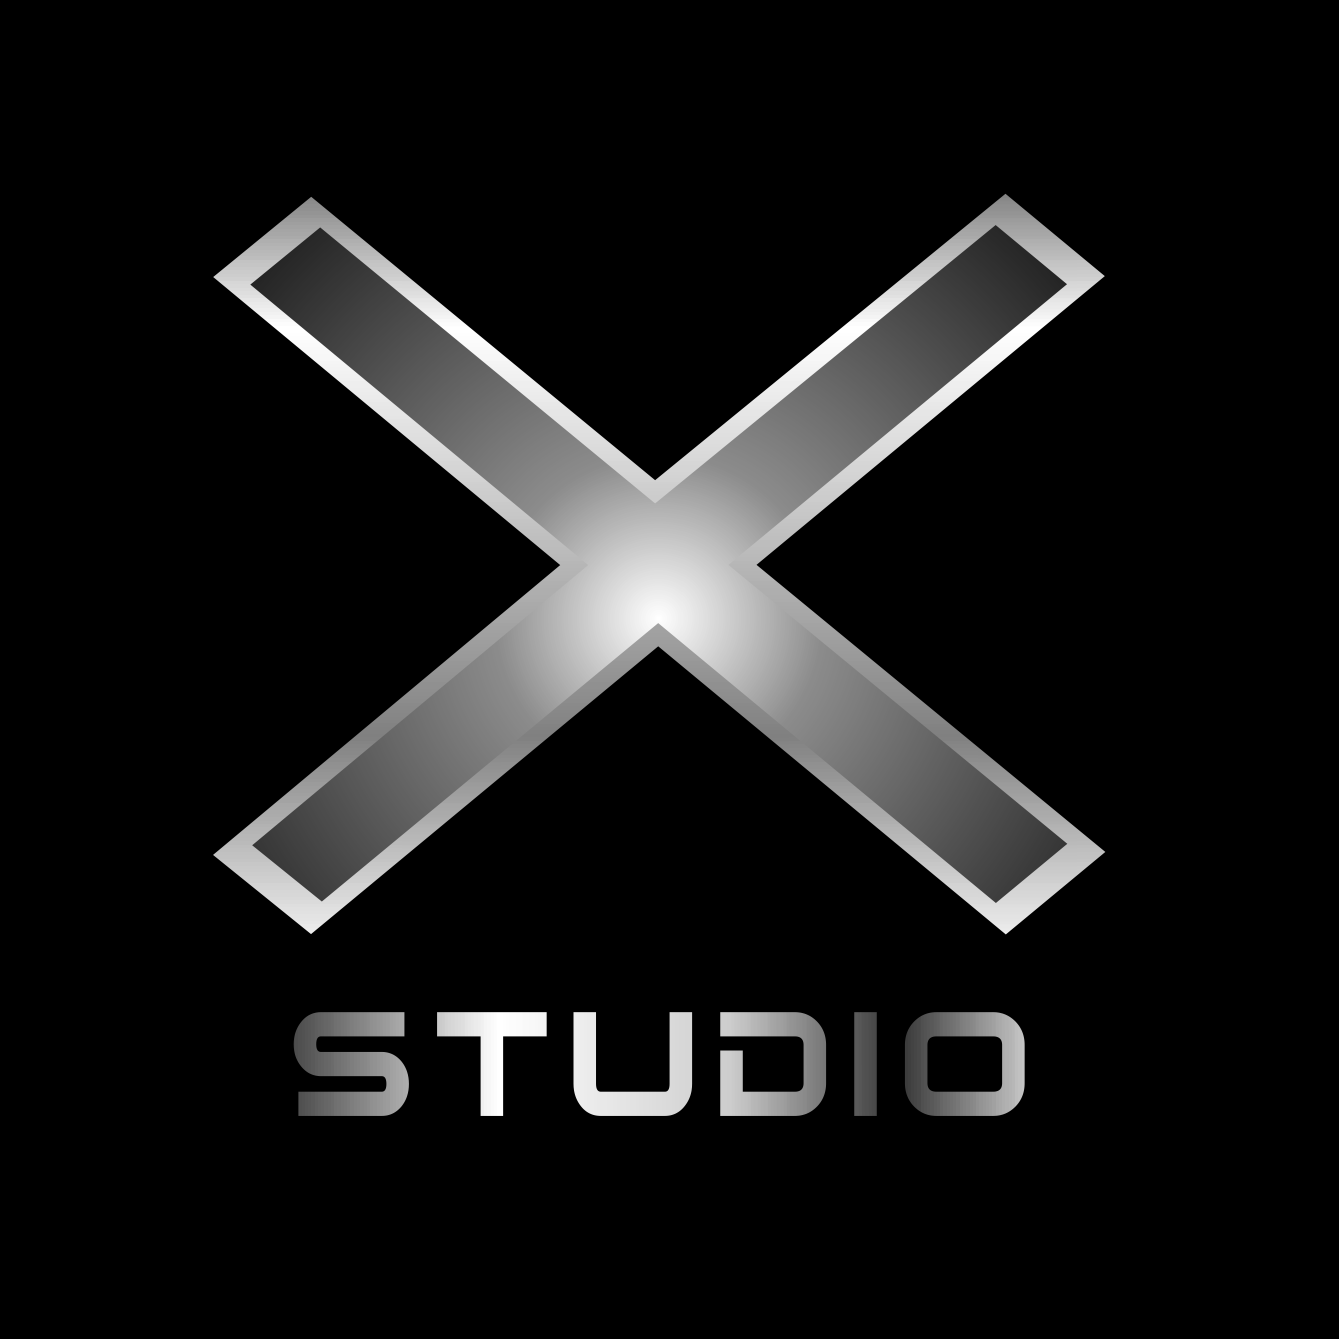 X-Studio 